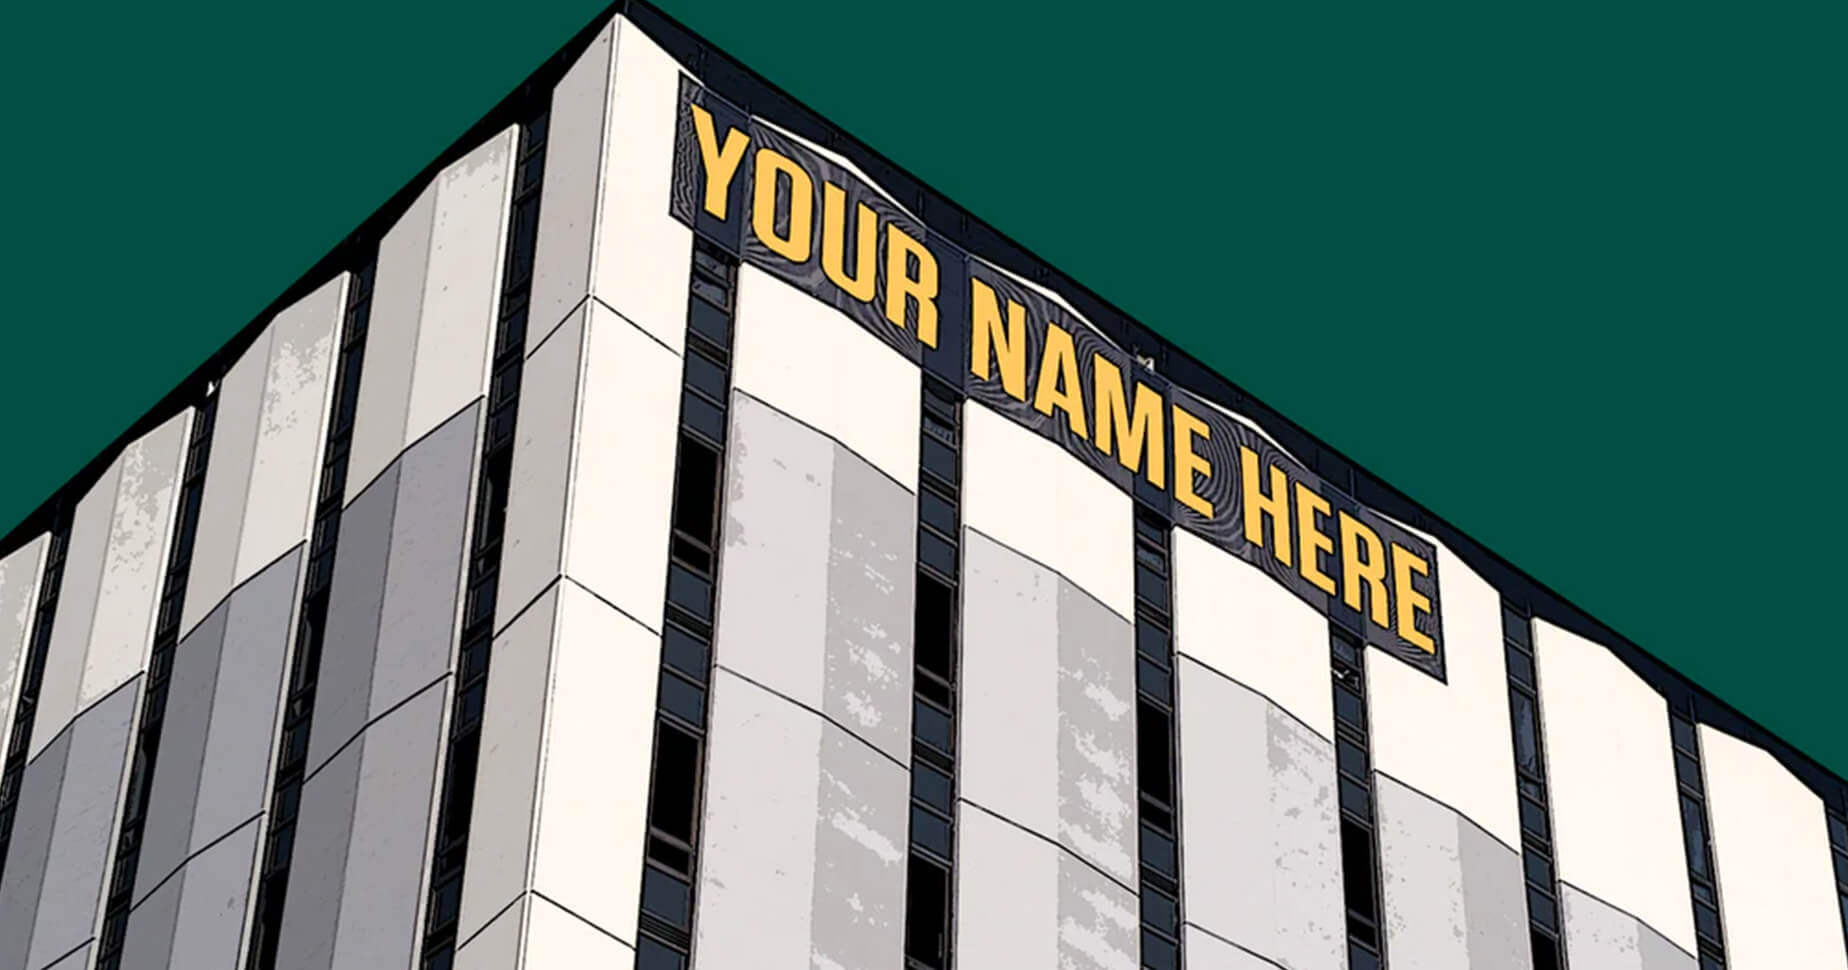 Illustration eines Firmengebäudes mit Slogan "Your Name Here"